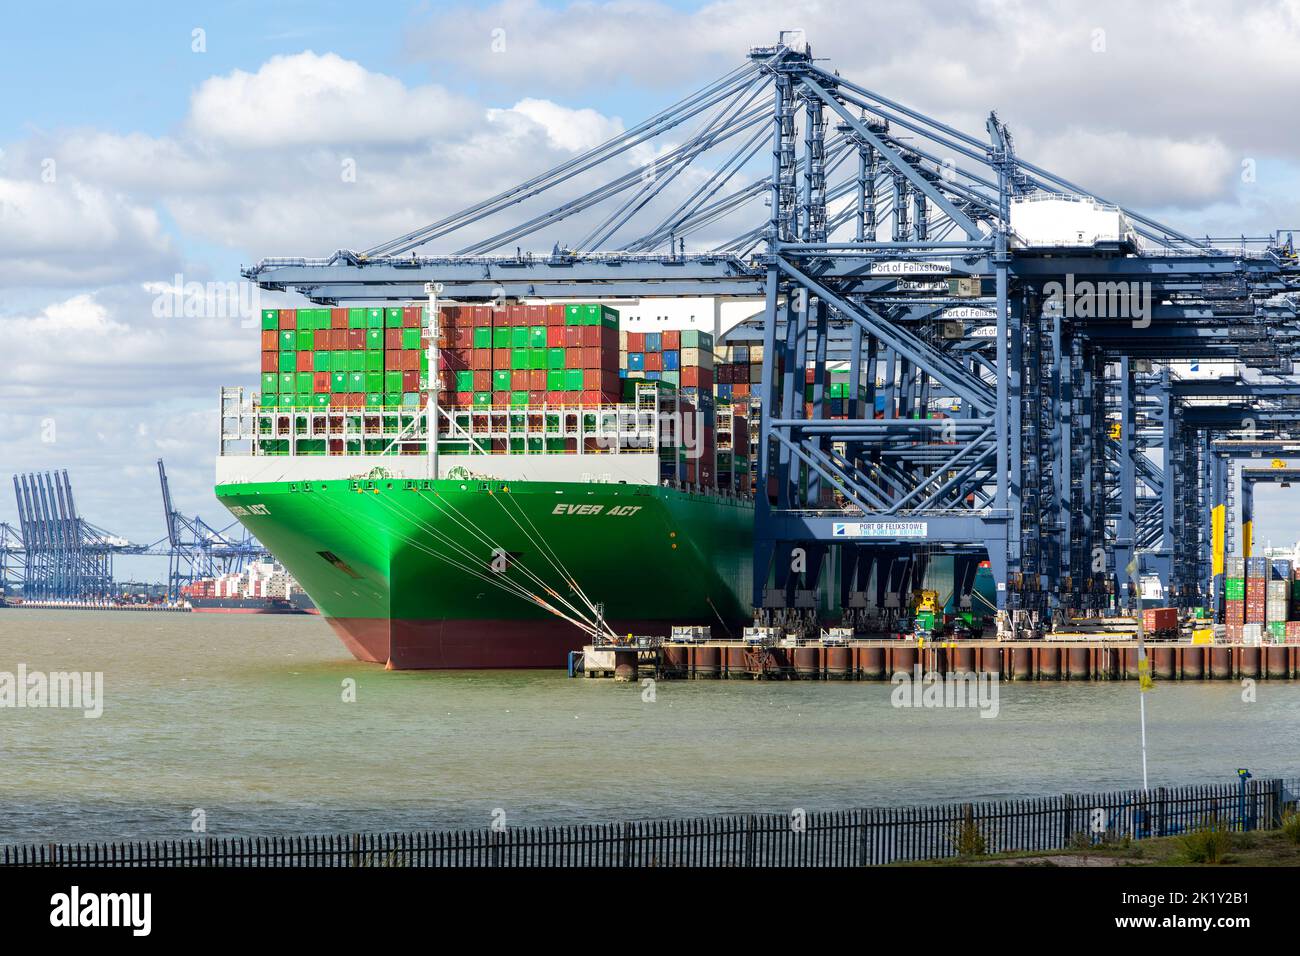 Evergreen even ACT navire à conteneurs grues portiques sur quai, Port de Felixstowe, Suffolk, Angleterre, Royaume-Uni Banque D'Images